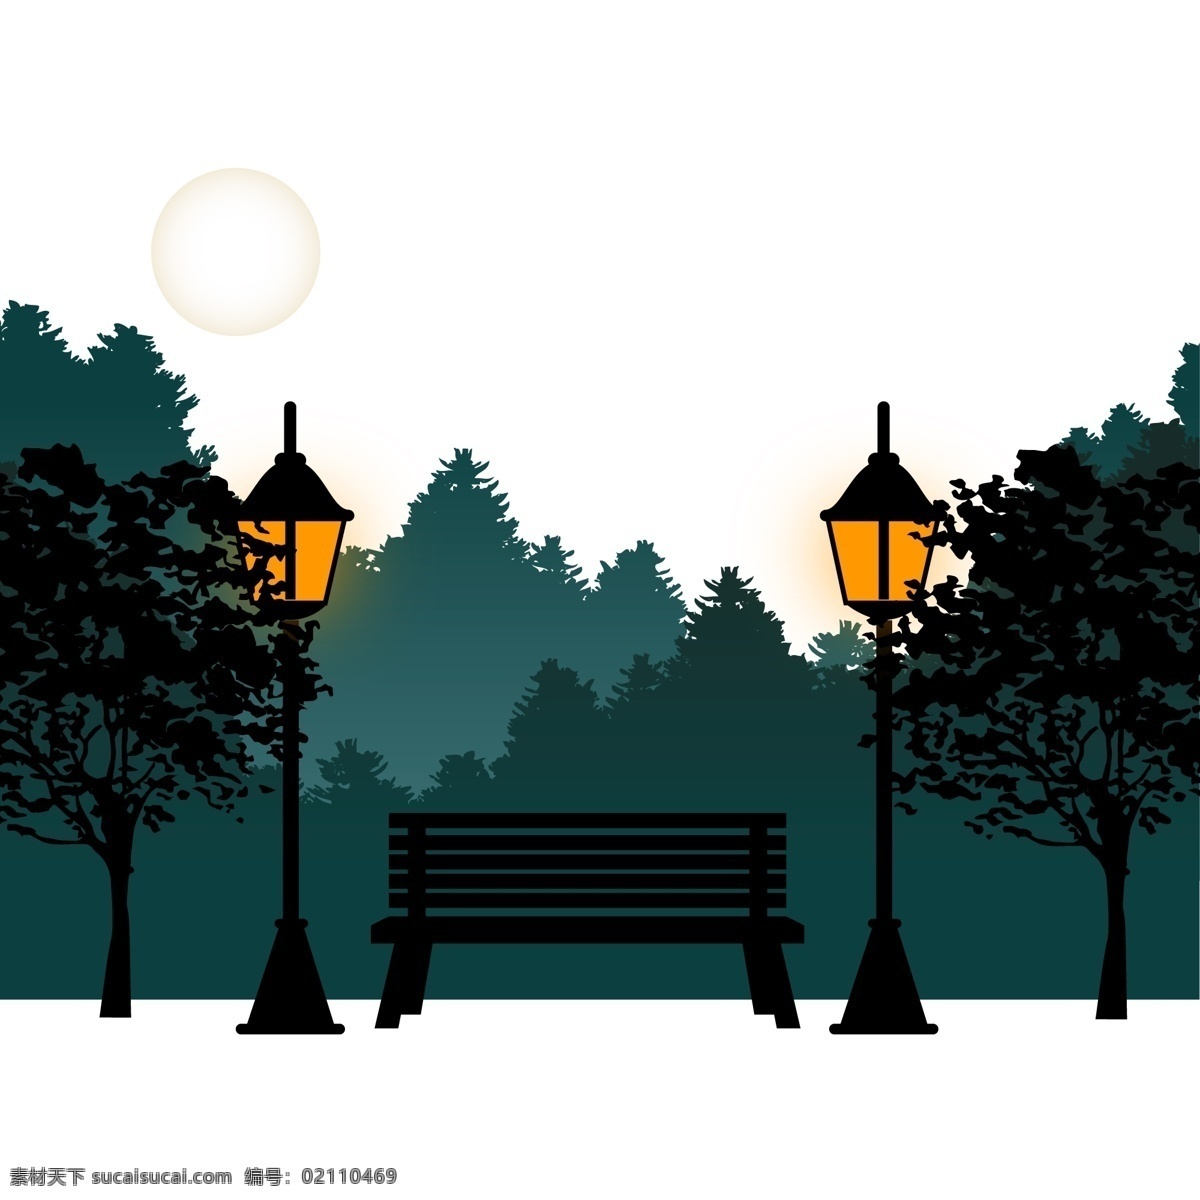 公园 长椅 路灯 夜景 月亮 植物剪影 装饰图案